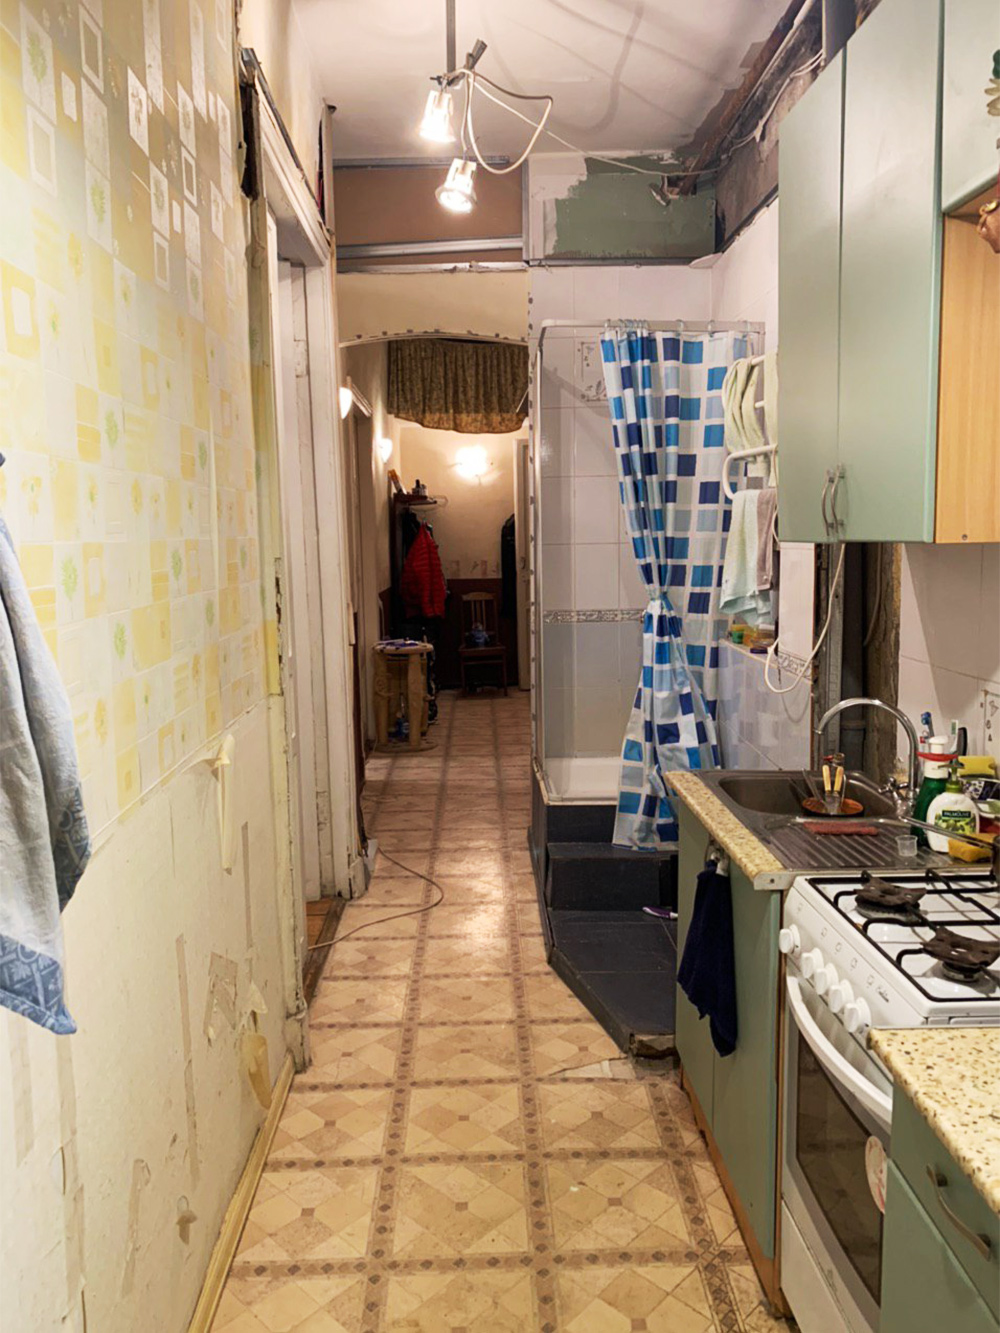 Кухня — в коридоре, душевая кабина — на кухне: классика старого фонда